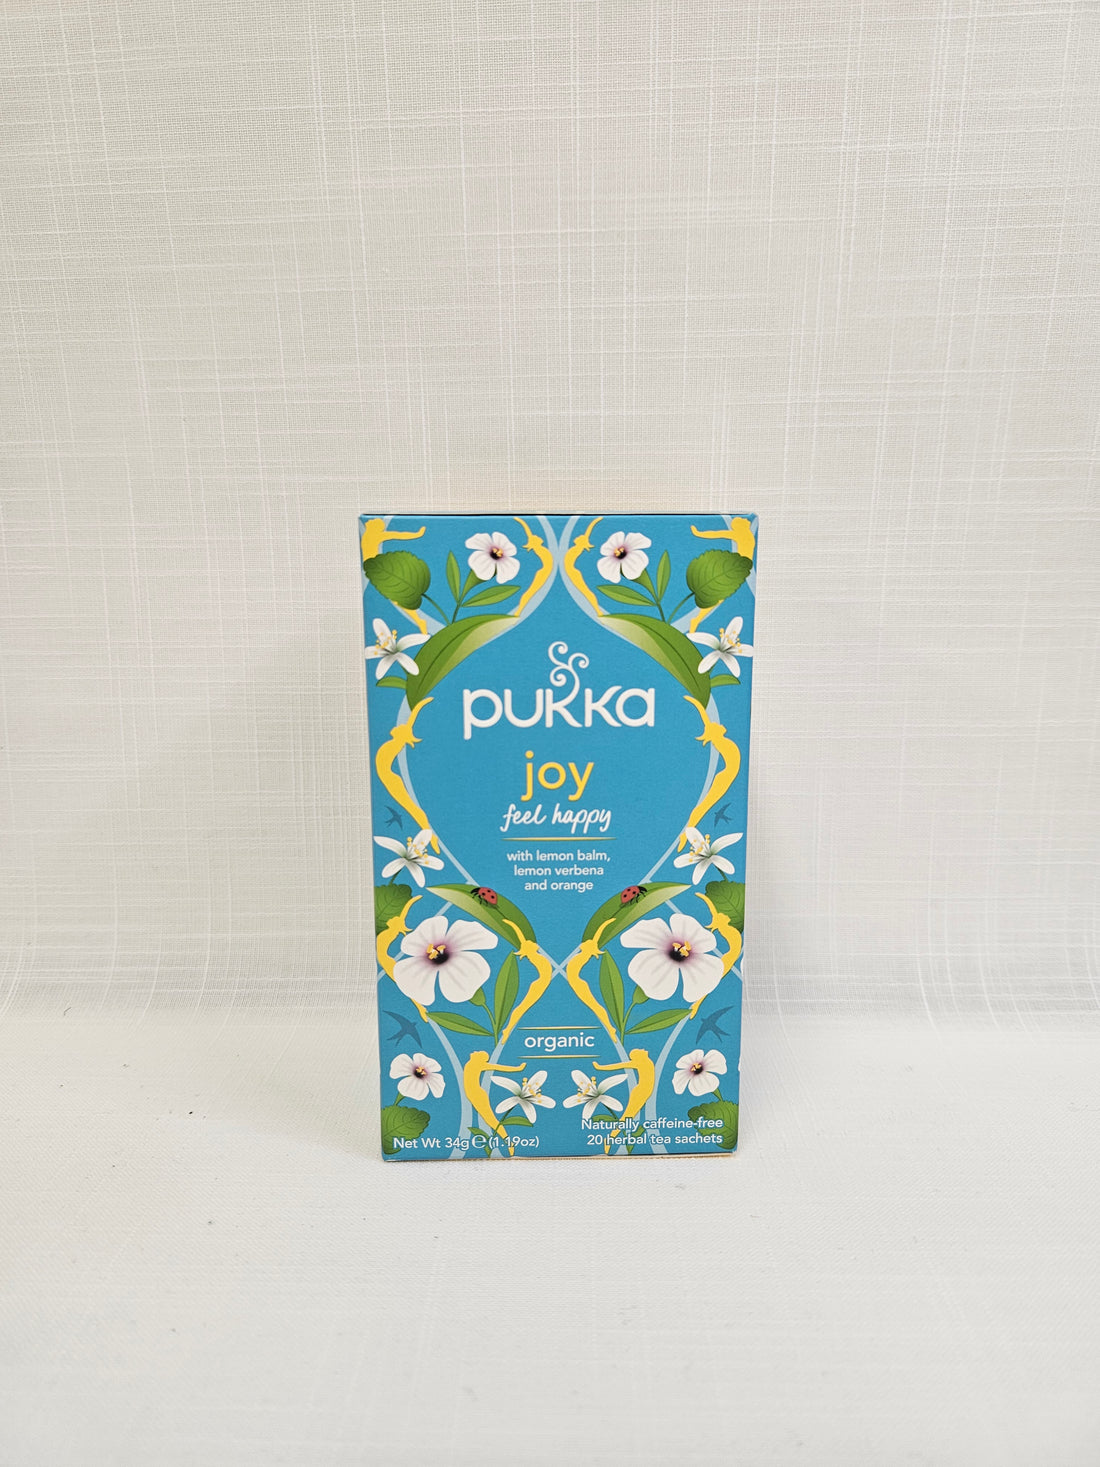 A box of Joy Tea by Pukka.